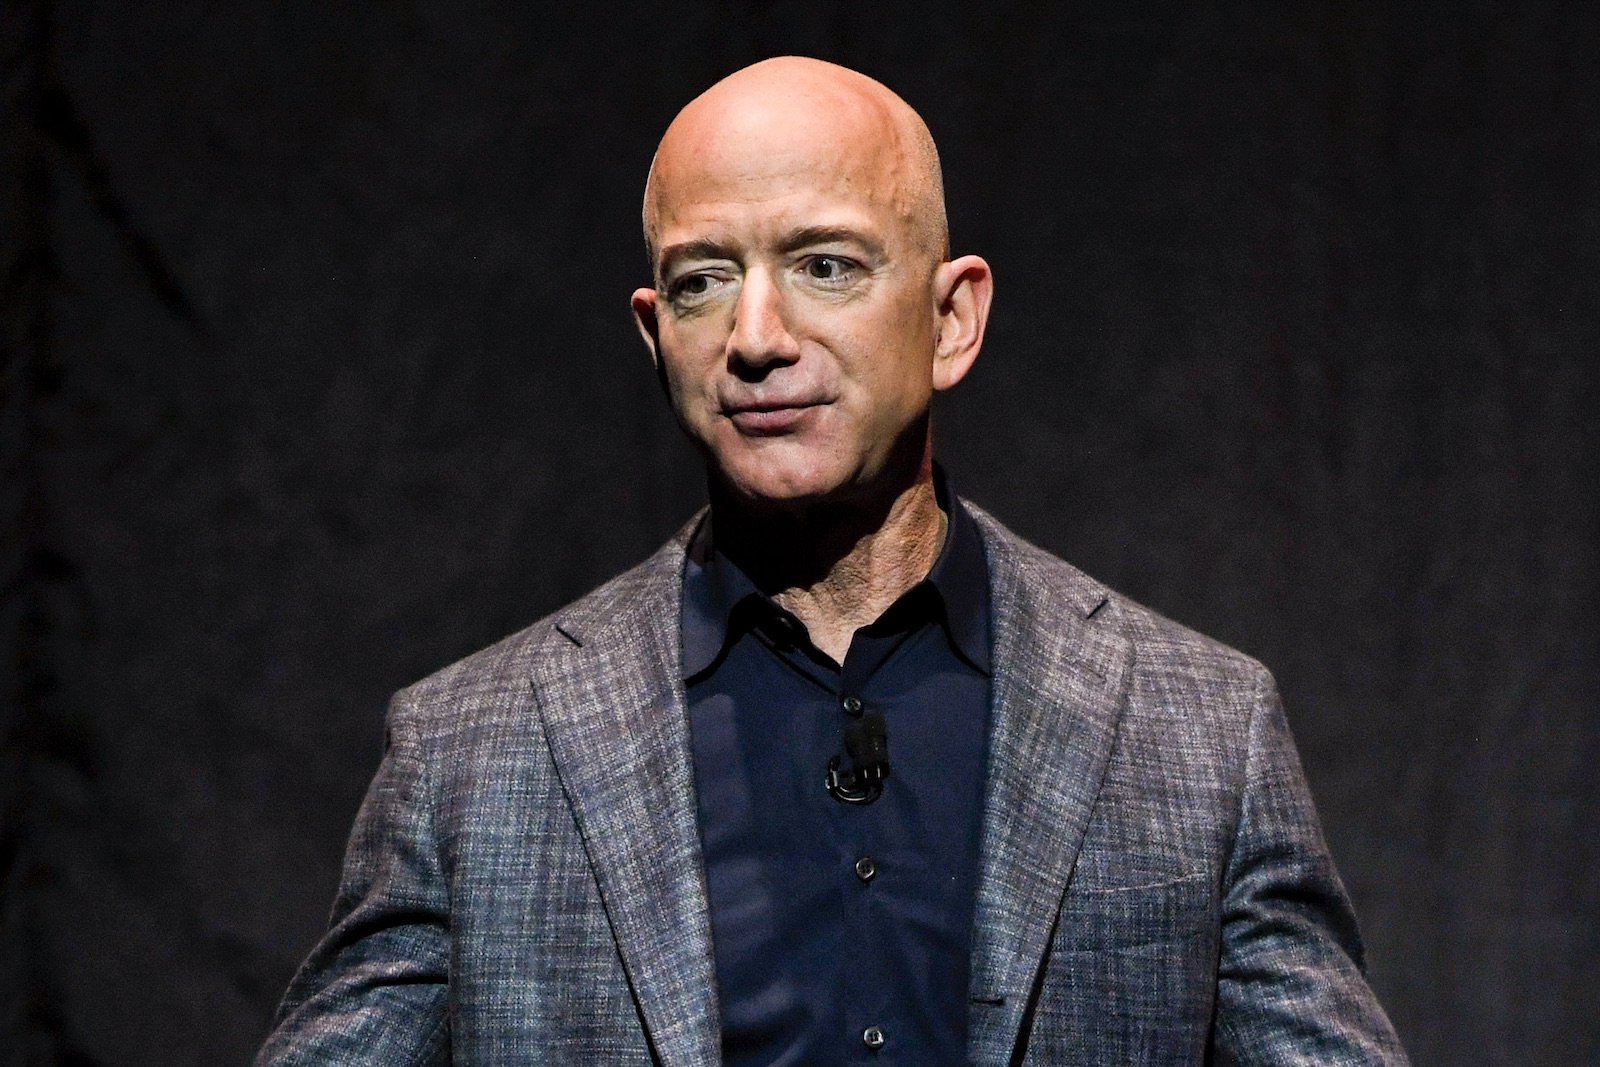 米Amazonのベゾス氏がCEO退任へ、社員へのメールで「成功のルーツは発明」と語る